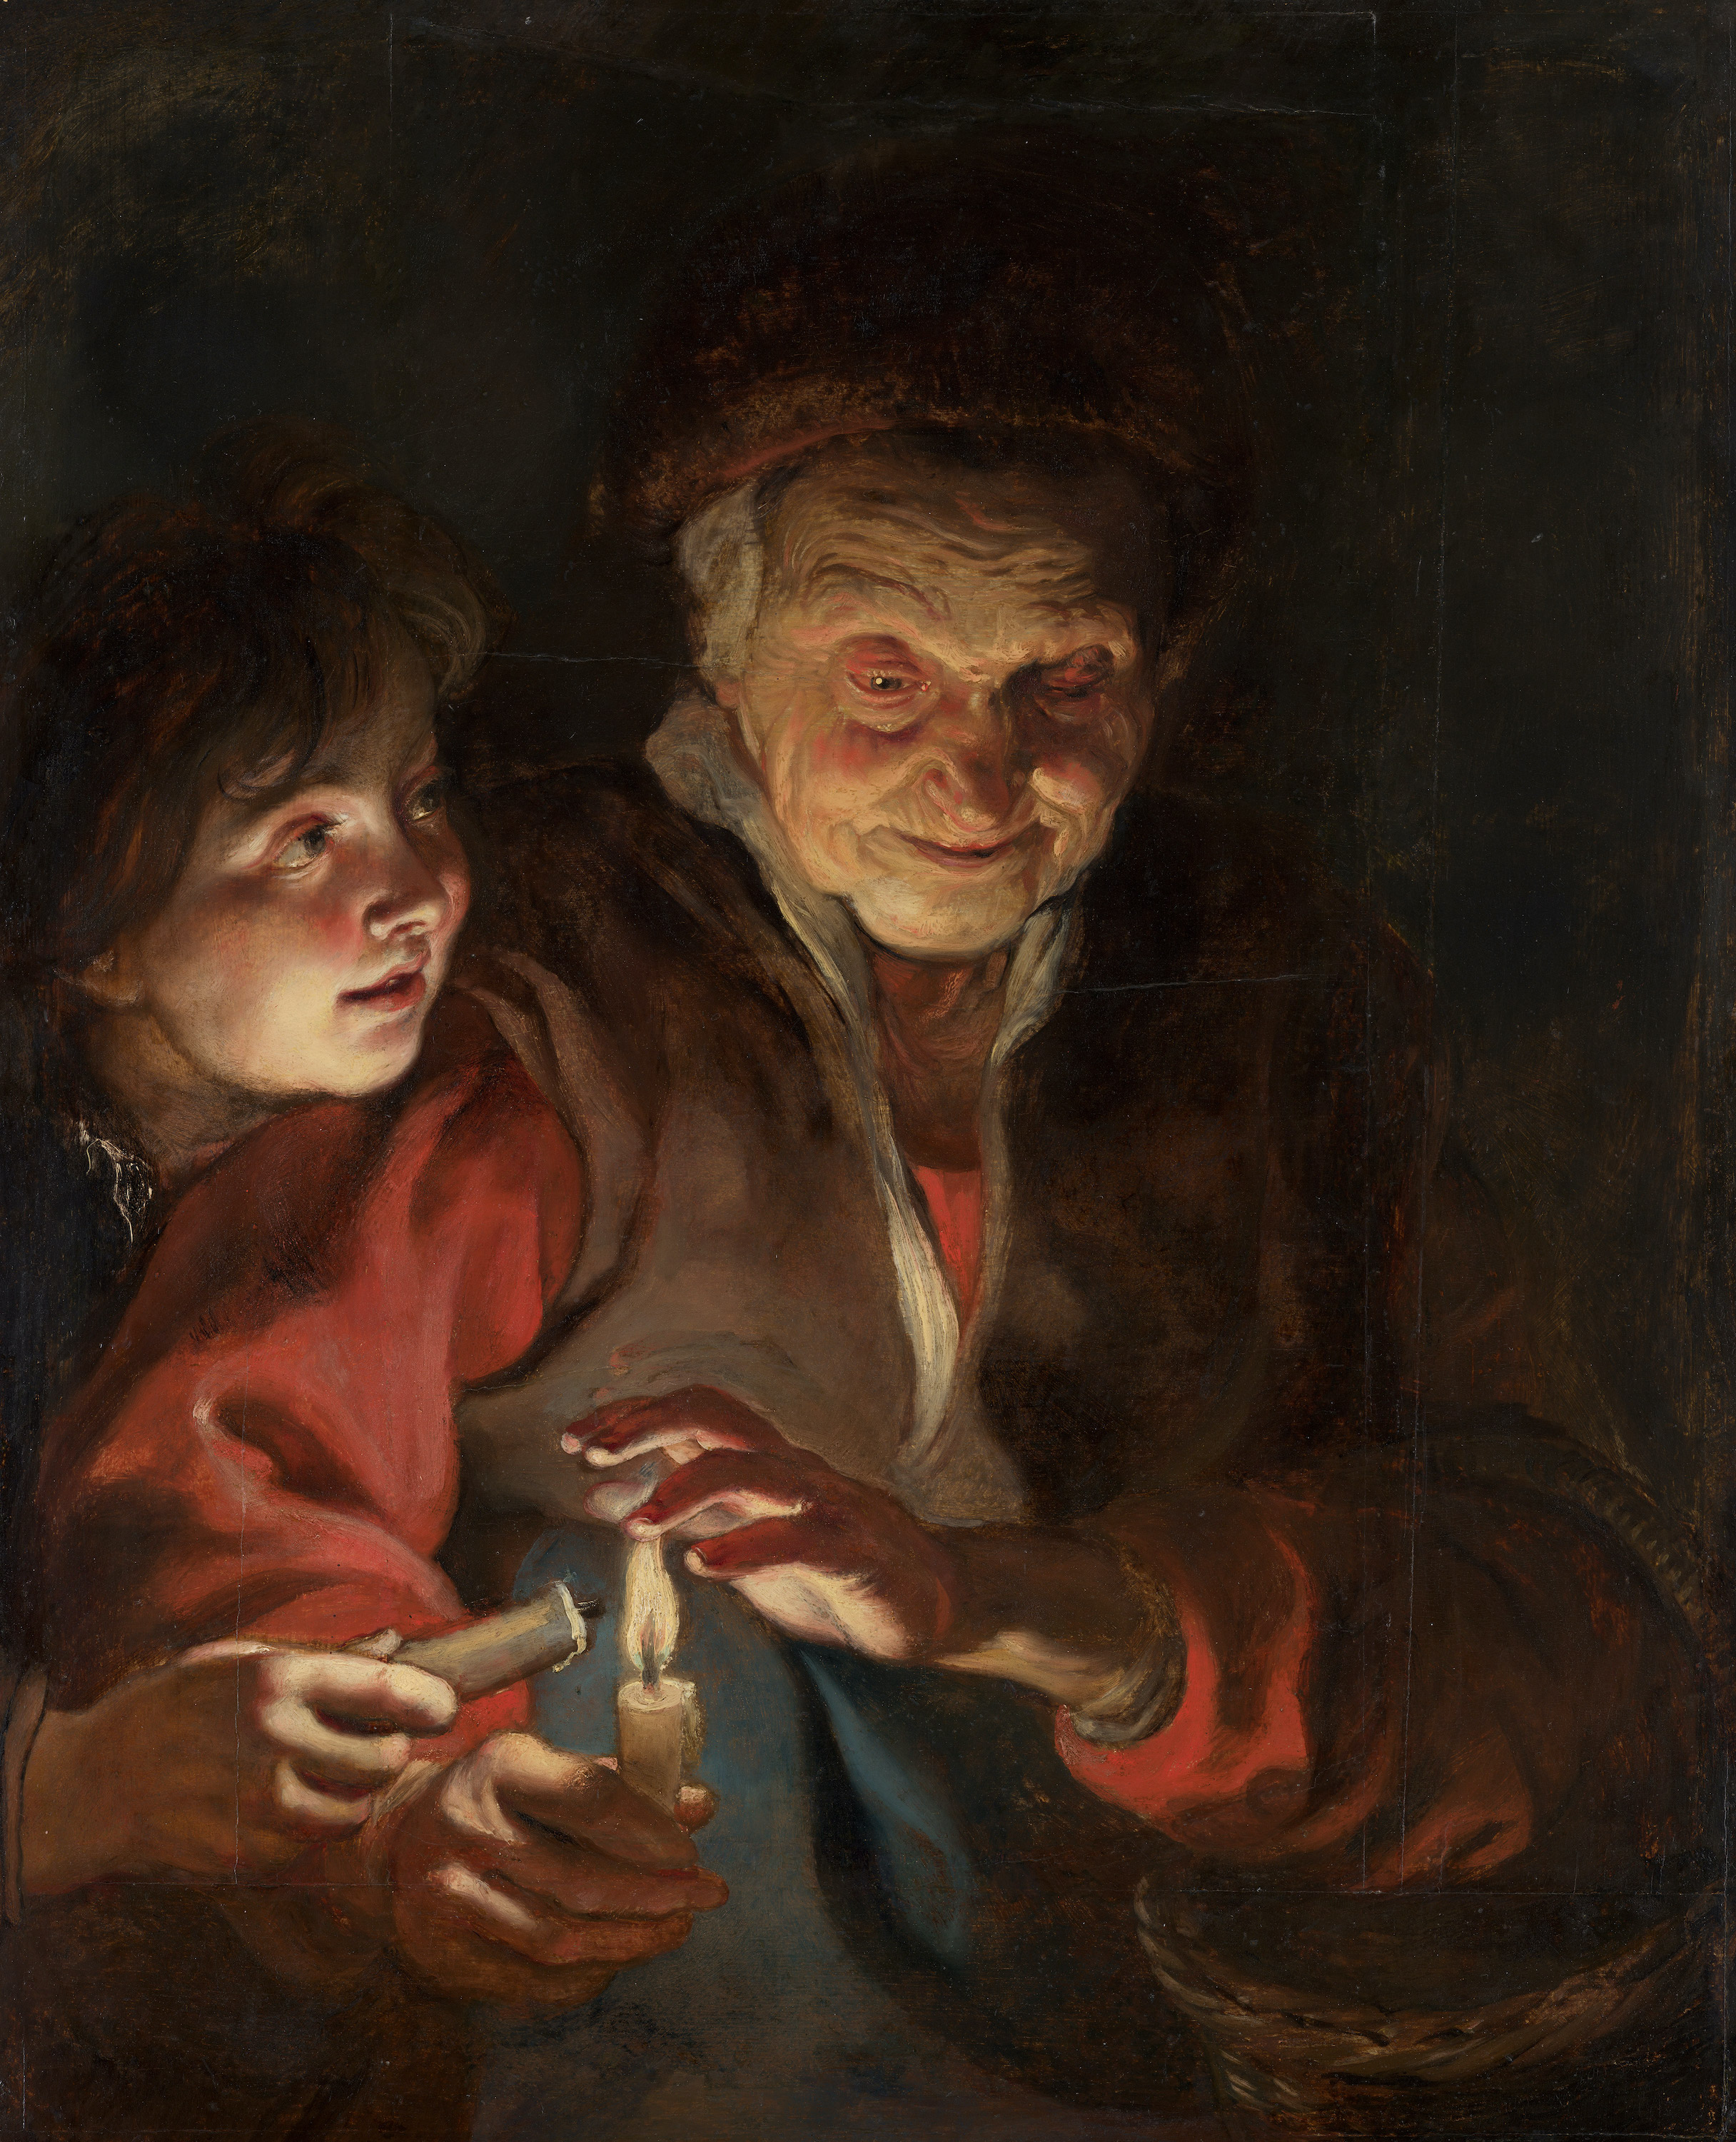 बूढ़ी औरत और लड़का मोमबत्तियों के साथ by Peter Paul Rubens - १६१६ - १६१७ - ७७ x ६२.५ सेमी 